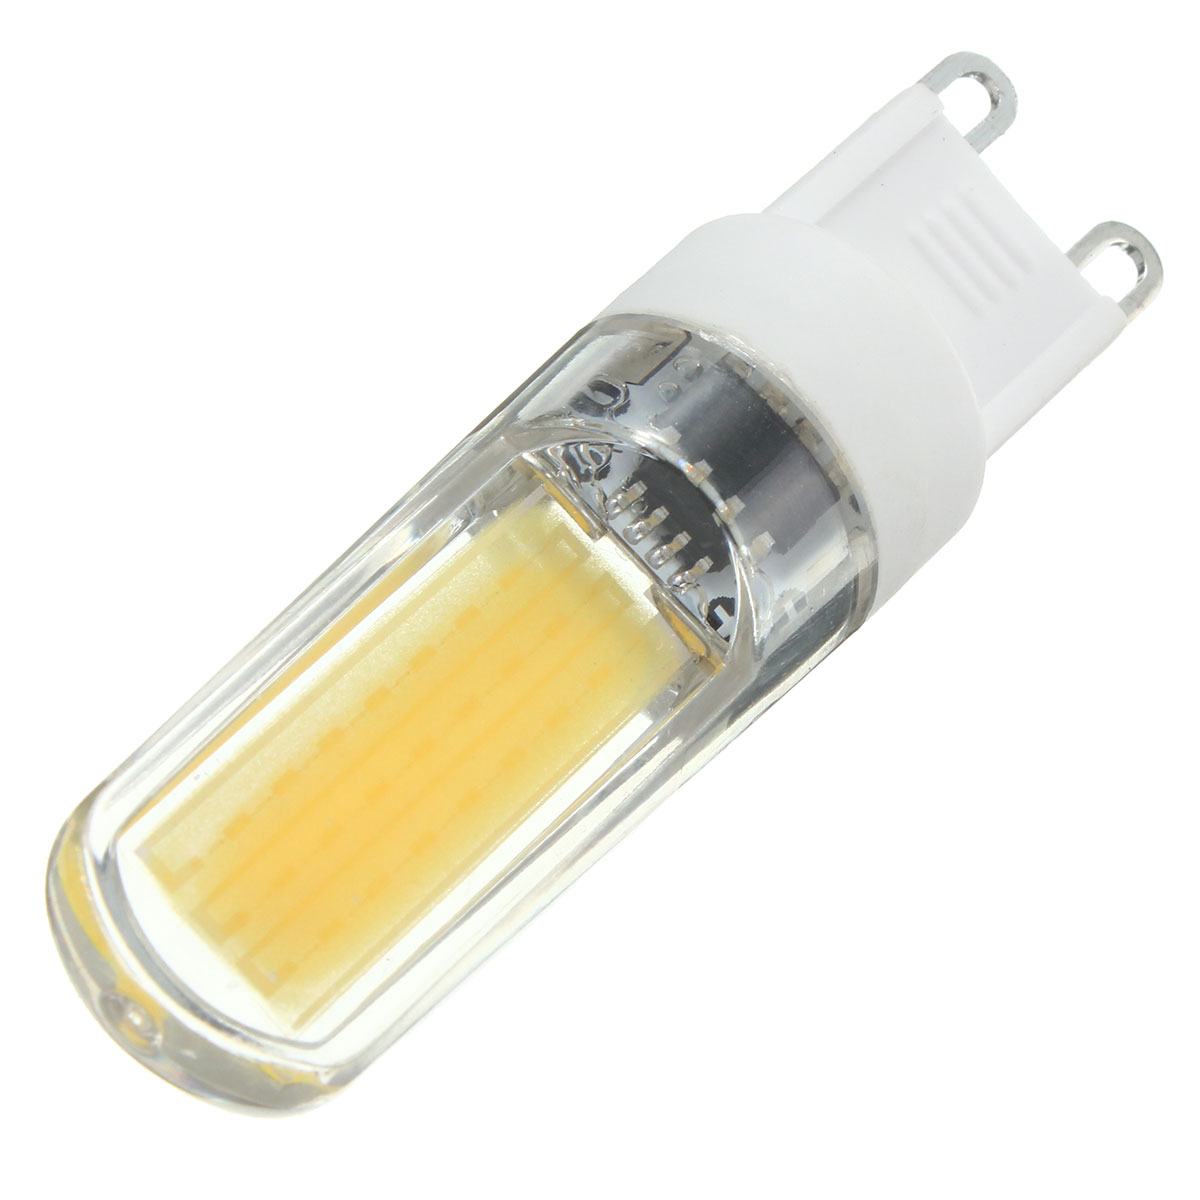 G9-LED-3W-Pure-White-Warm-White-COB-LED-PC-Material-Light-Lamp-Bulb-AC220V-1062195-10